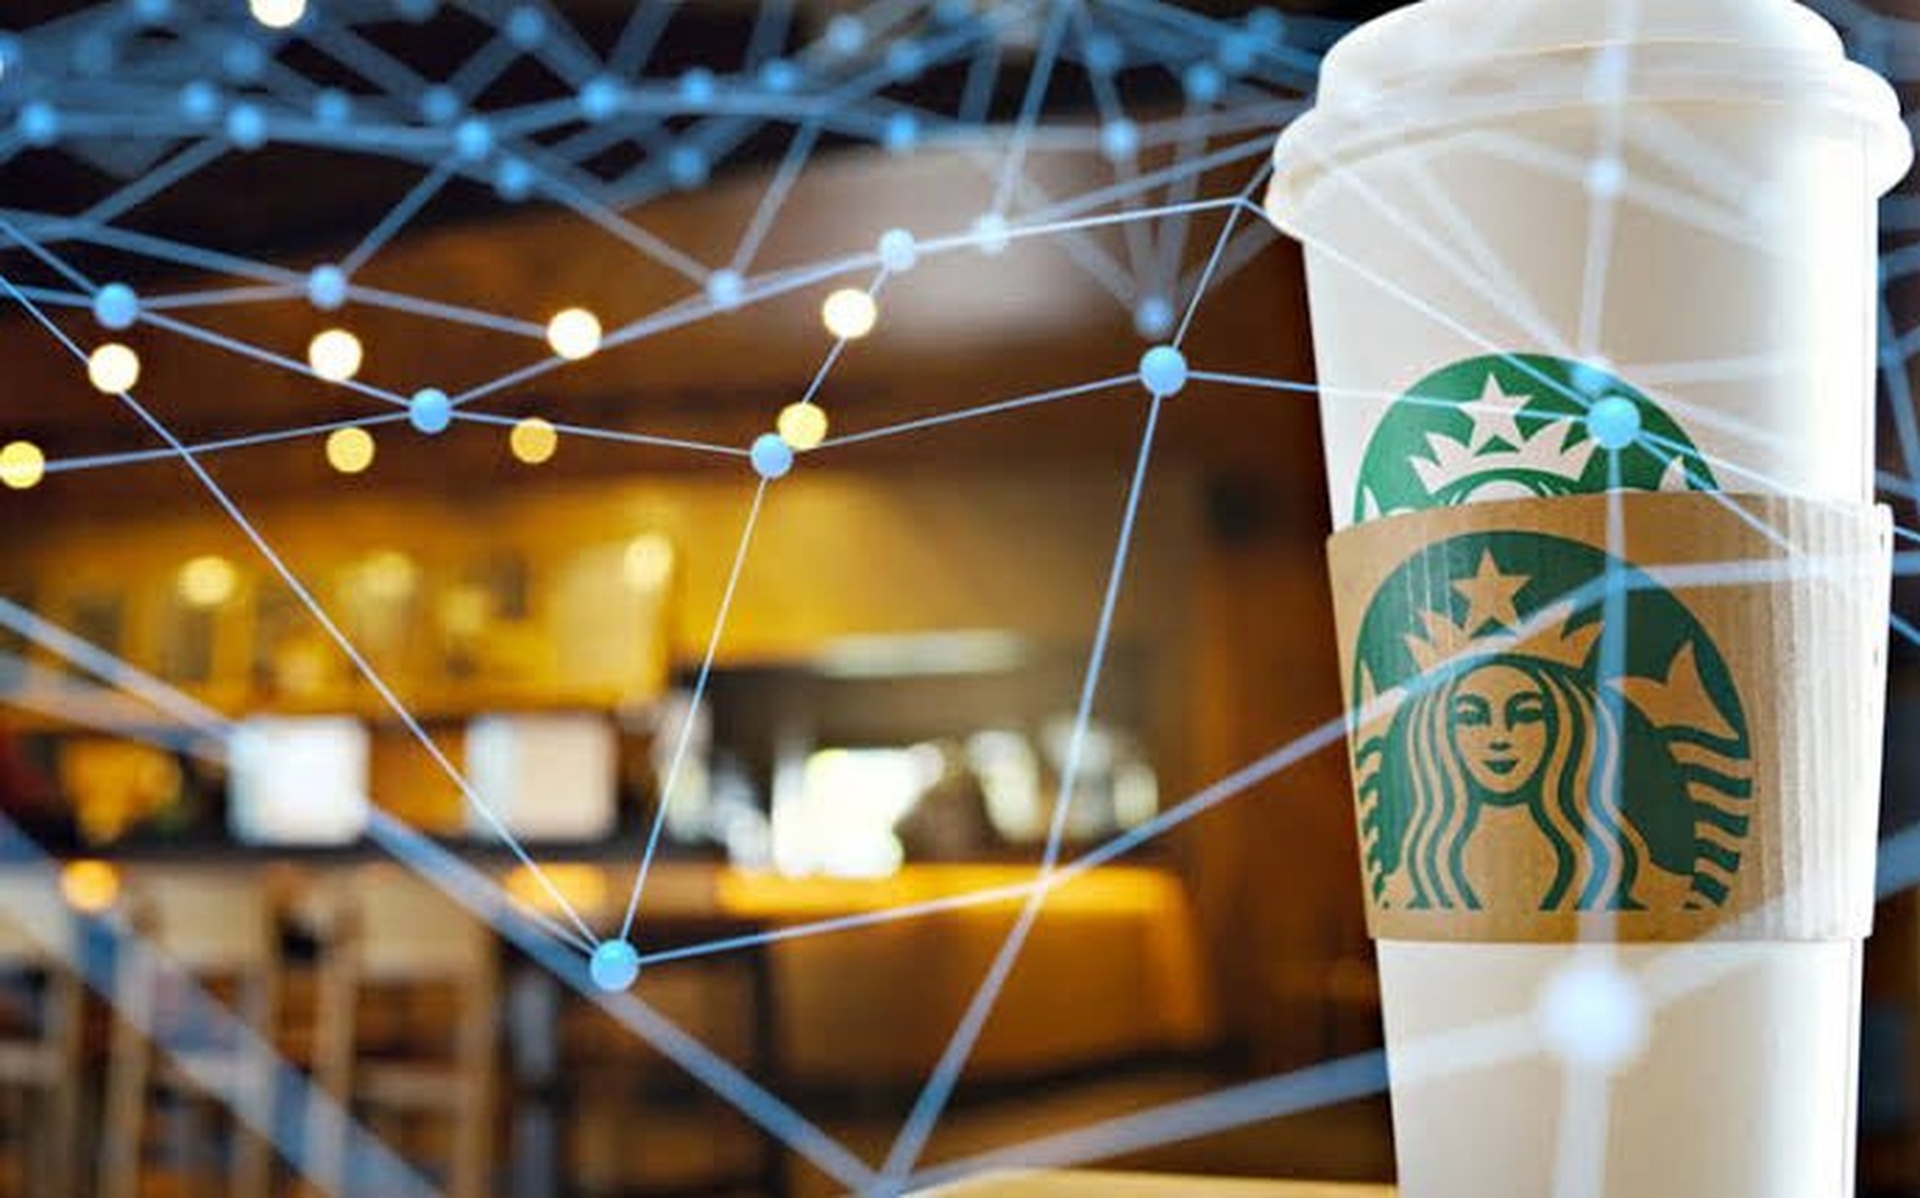 Das Loyalitätsprogramm von Starbucks Metaverse ist eine Plattform, die durch die Nutzung von Web3-Technologien erstellt wurde, um ein unternehmensnahes Modell der gemeinsamen Loyalität und des wirtschaftlichen Eigentums mit den Kunden zu schaffen.